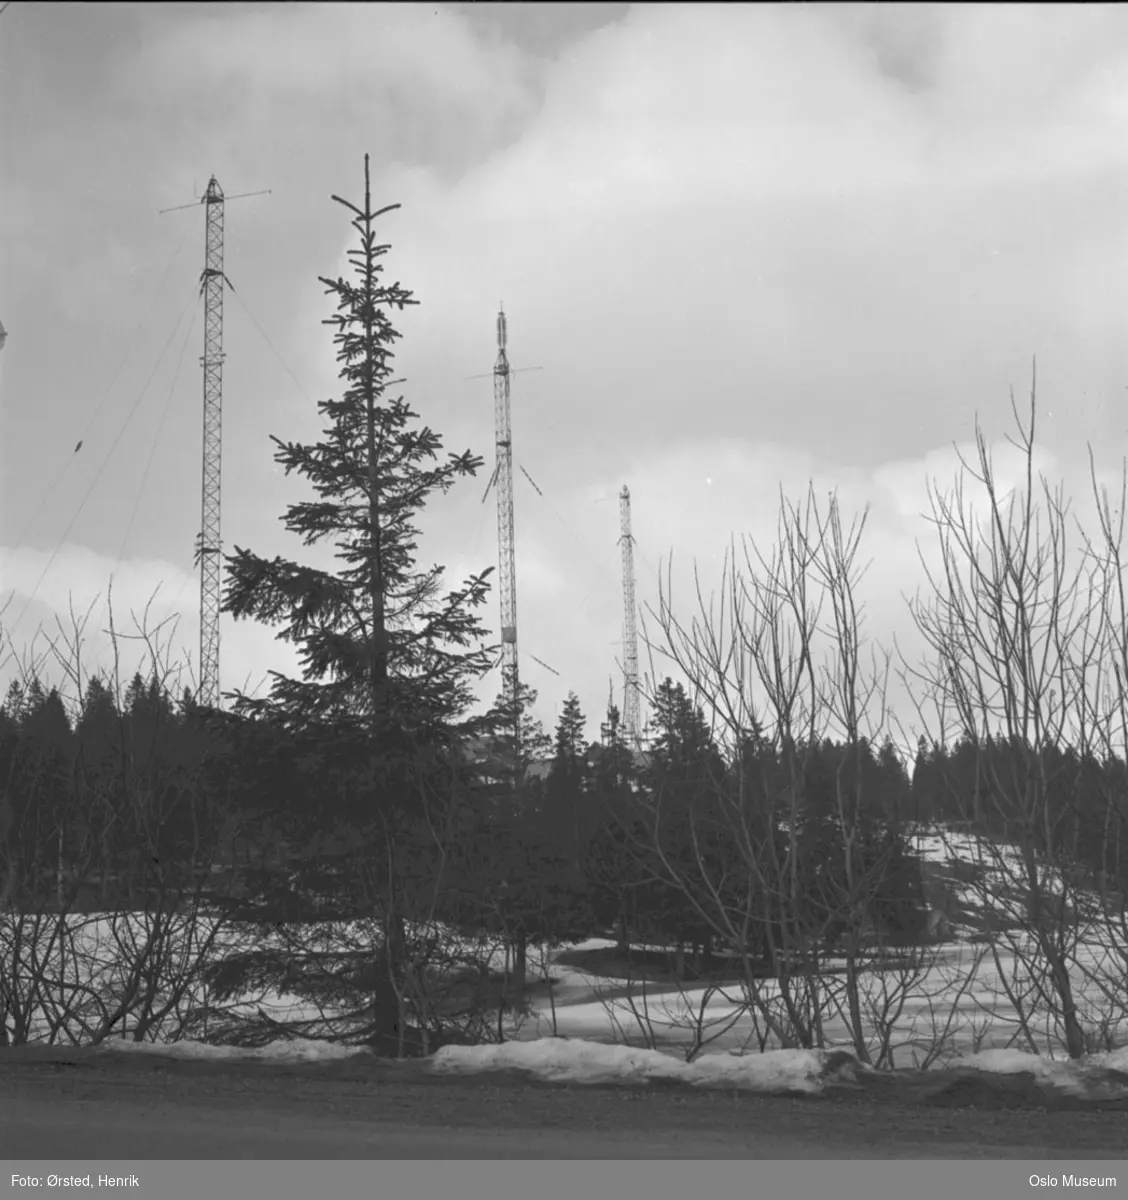 Tryvannsmastene, radiomaster, skog